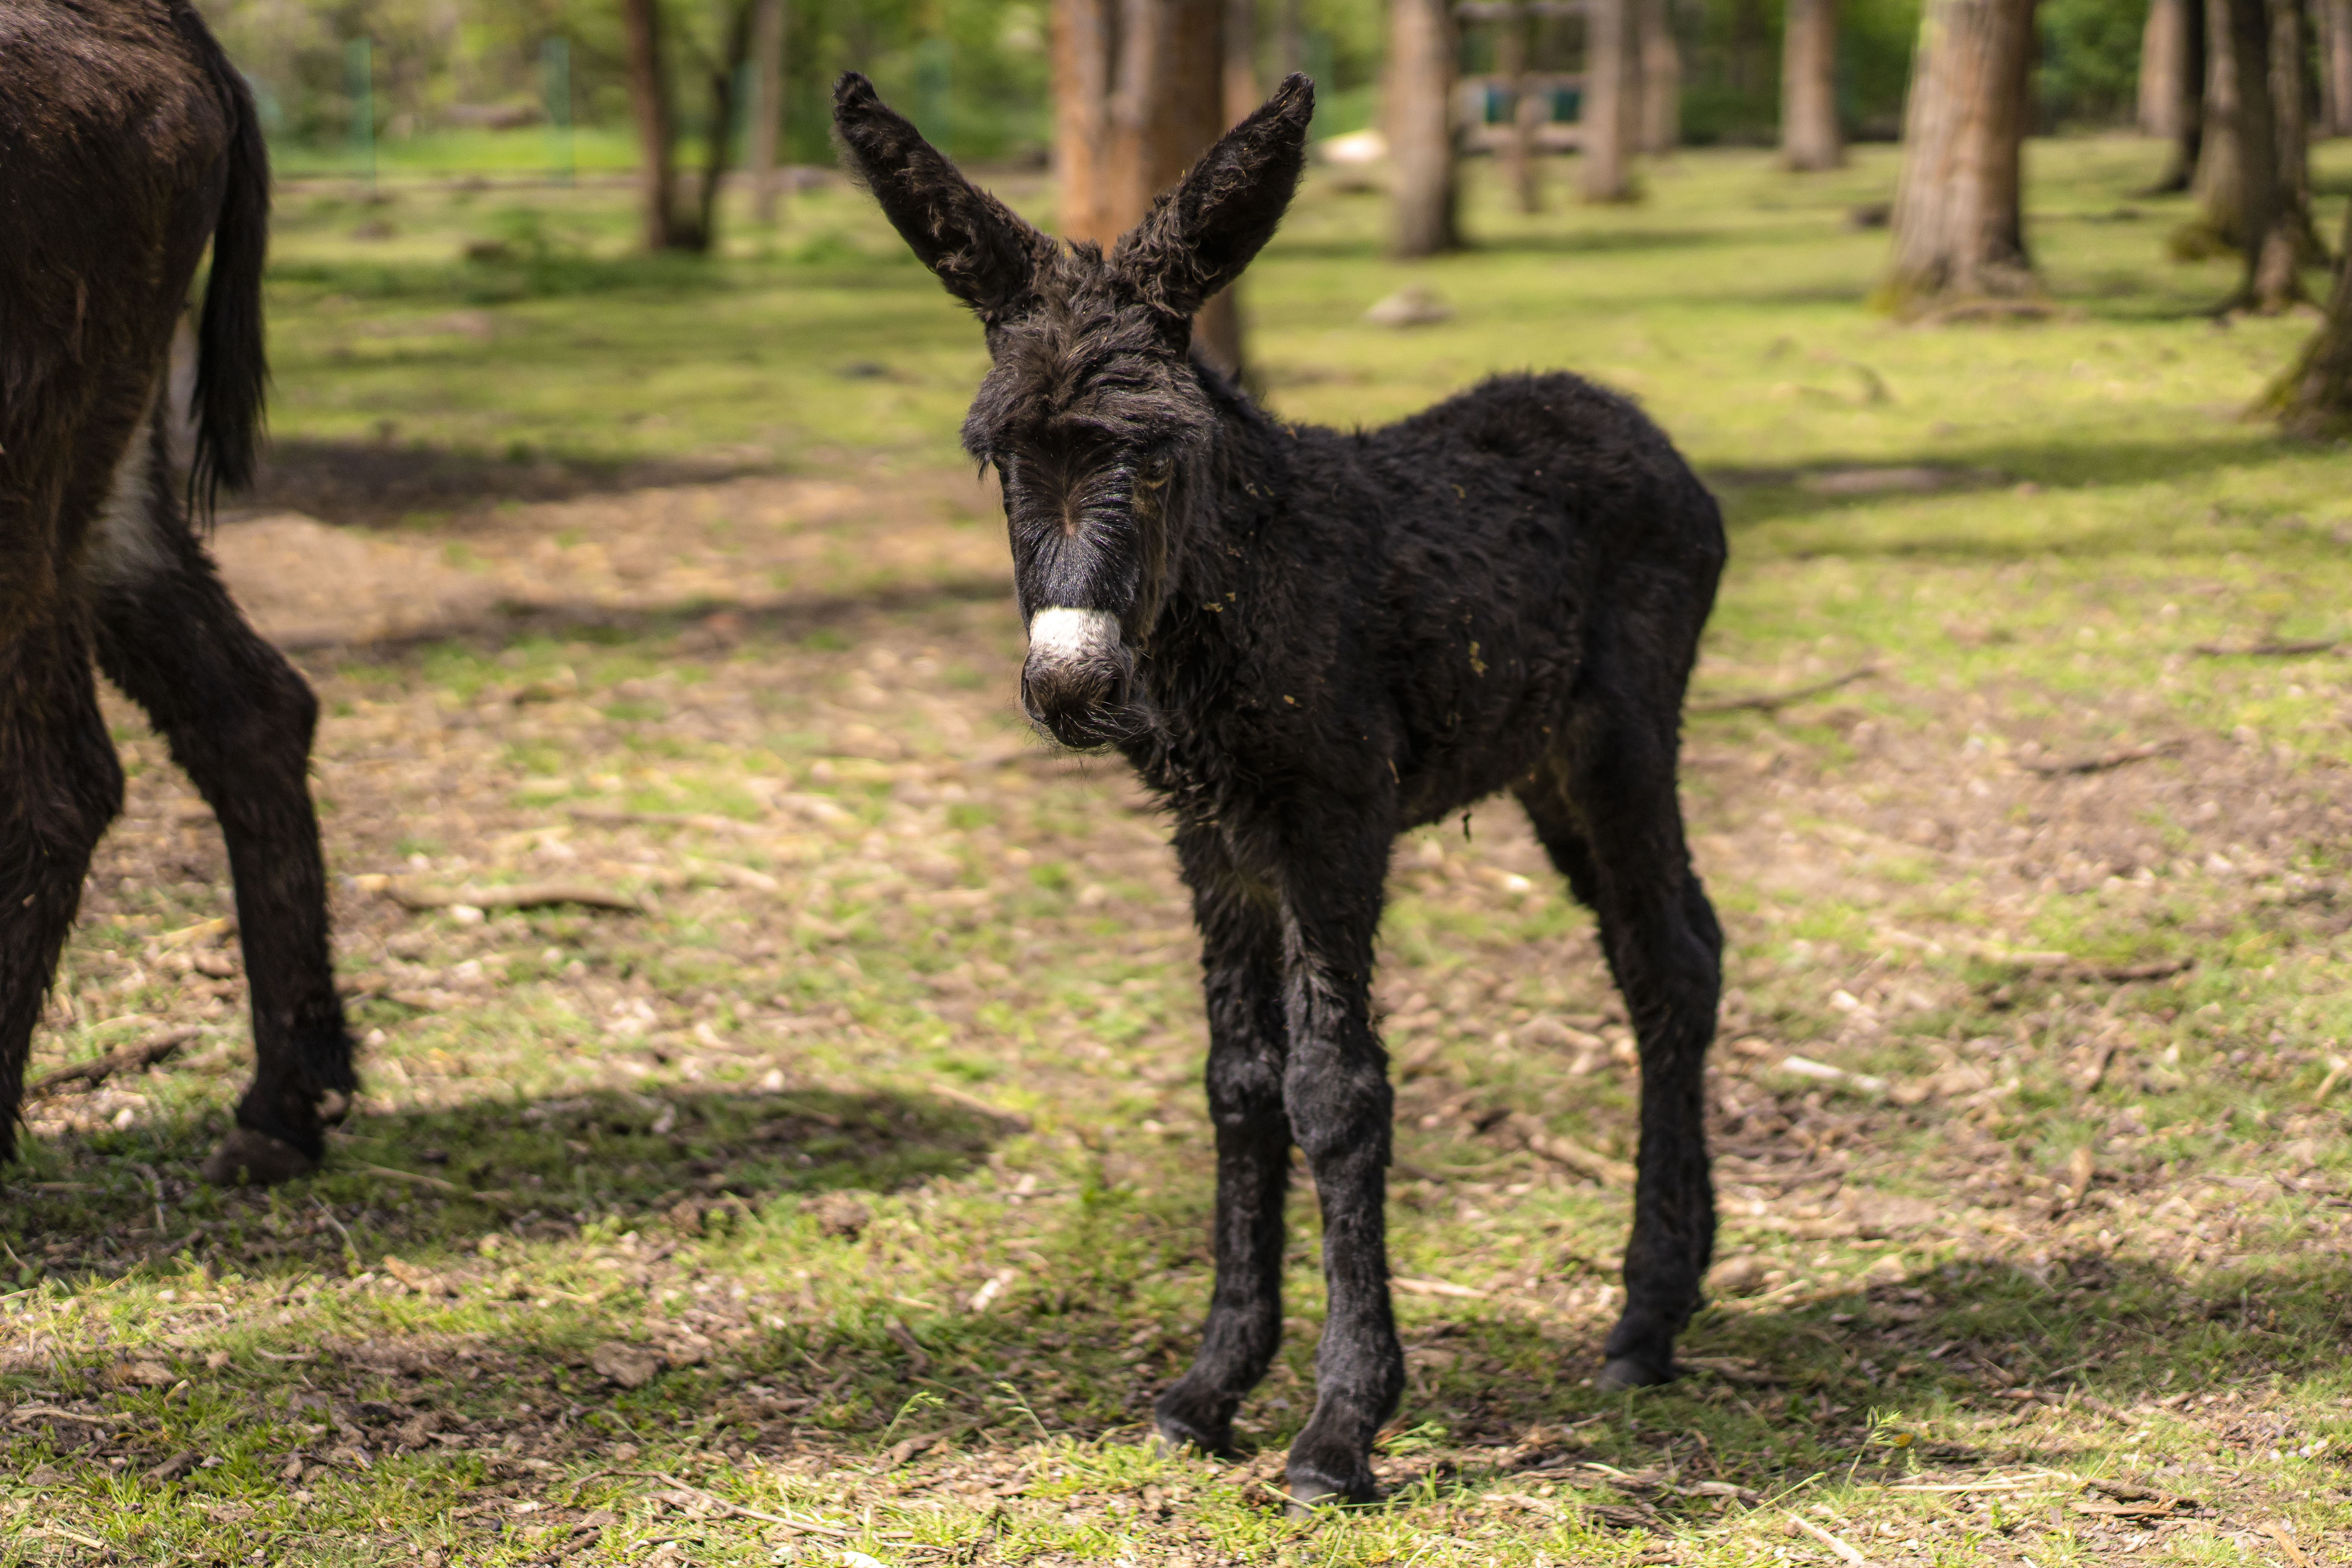 Jubileumi jövevény a Zoo Debrecenben, megszületett Maja, a parlagi szamárcsikó! - 2. kép Hírek | Online Rádió - Egy Lépéssel Közelebb Hozzád! _ LépésRádió